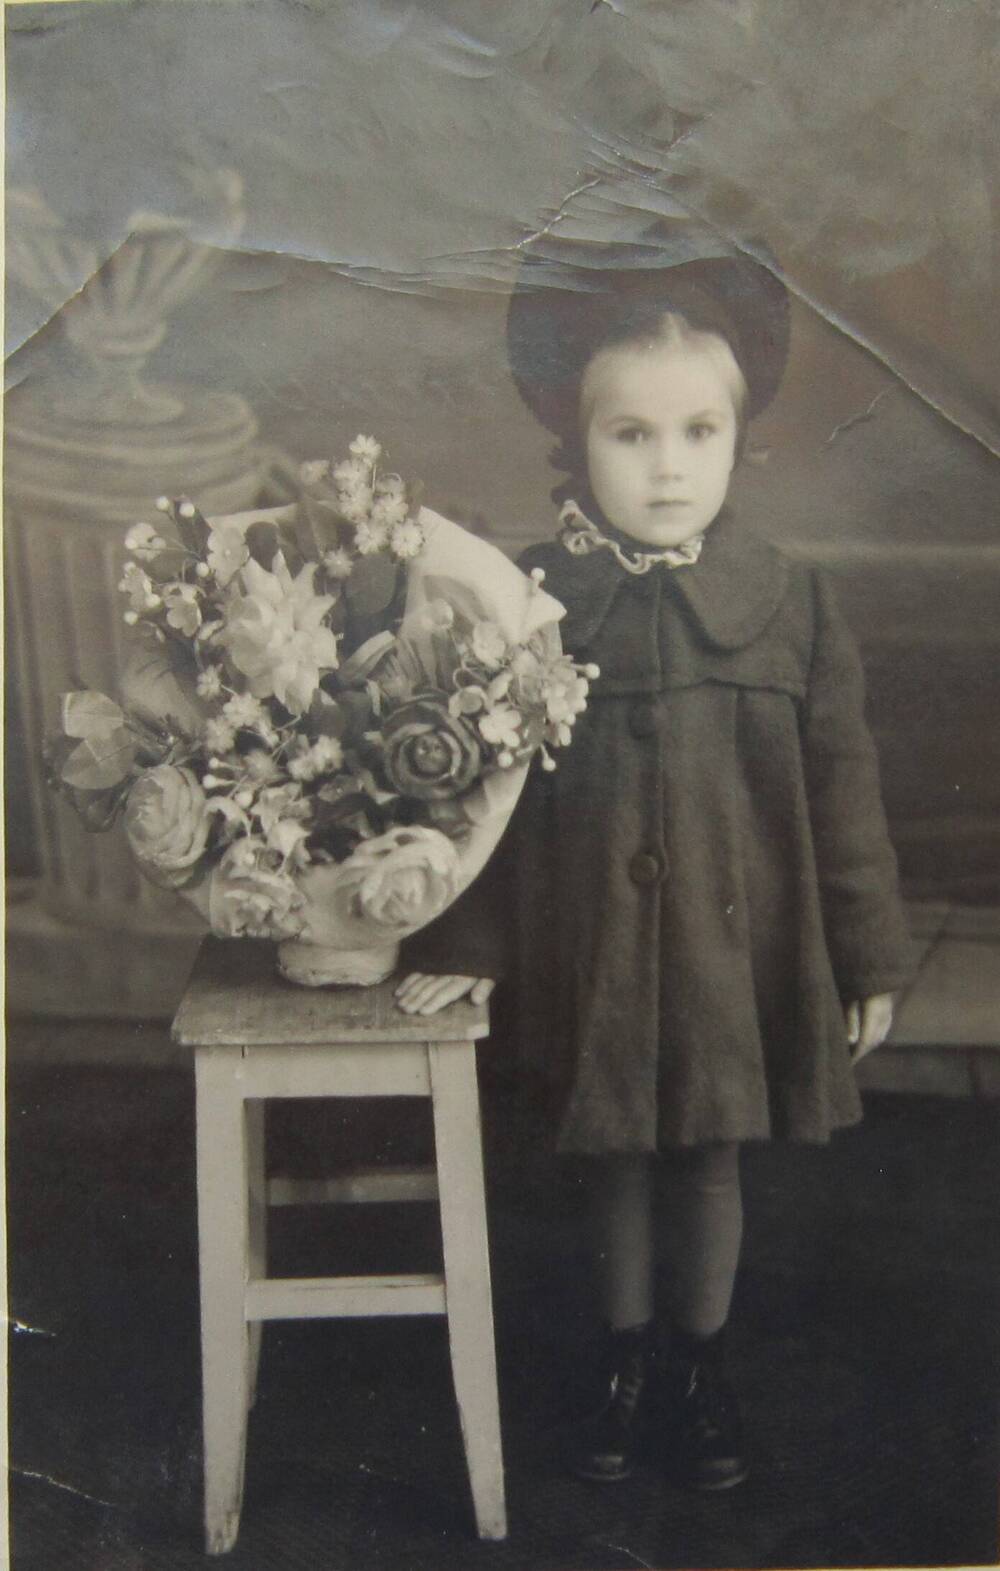 Фотоснимок. На фото девочка 5 лет в пальто, шляпке. Девочка стоит у табурета, на котором корзина искусственных цветов, 50-е гг. СССР.   
Коллекция фотографий 40-50-х годов, собранная 
Березнёвой М. А.